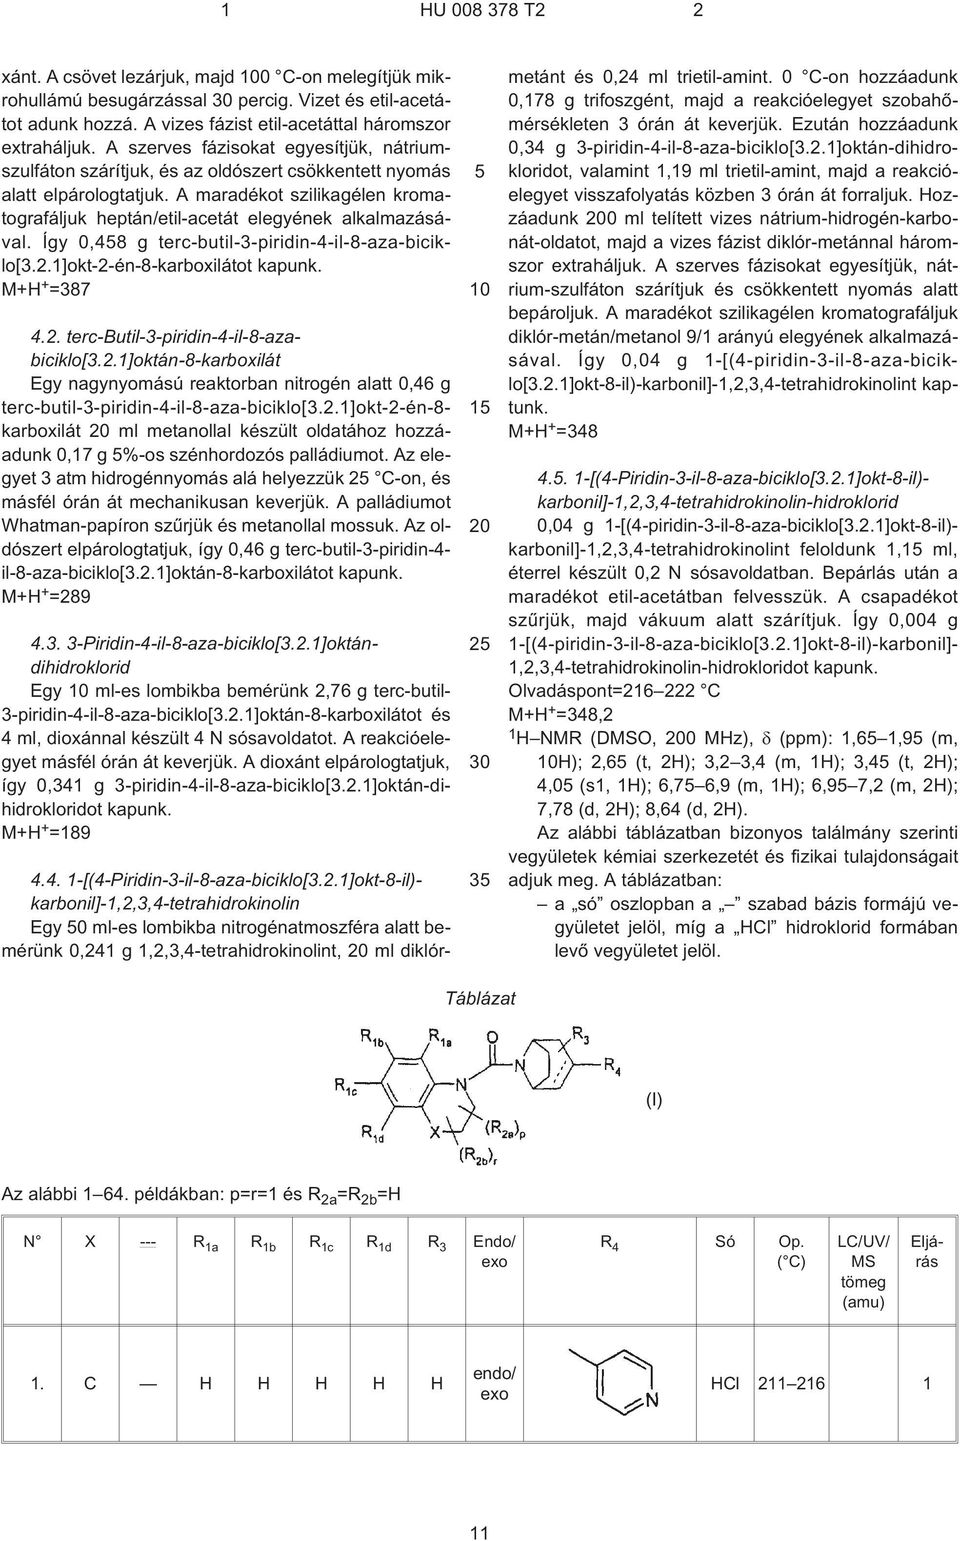 A maradékot szilikagélen kromatografáljuk heptán/etil-acetát elegyének alkalmazásával. Így 0,48 g terc-butil-3-piridin-4-il-8-aza-biciklo[3.2.1]okt-2-én-8-karboxilátot M+H + =387 4.2. terc-butil-3-piridin-4-il-8-azabiciklo[3.